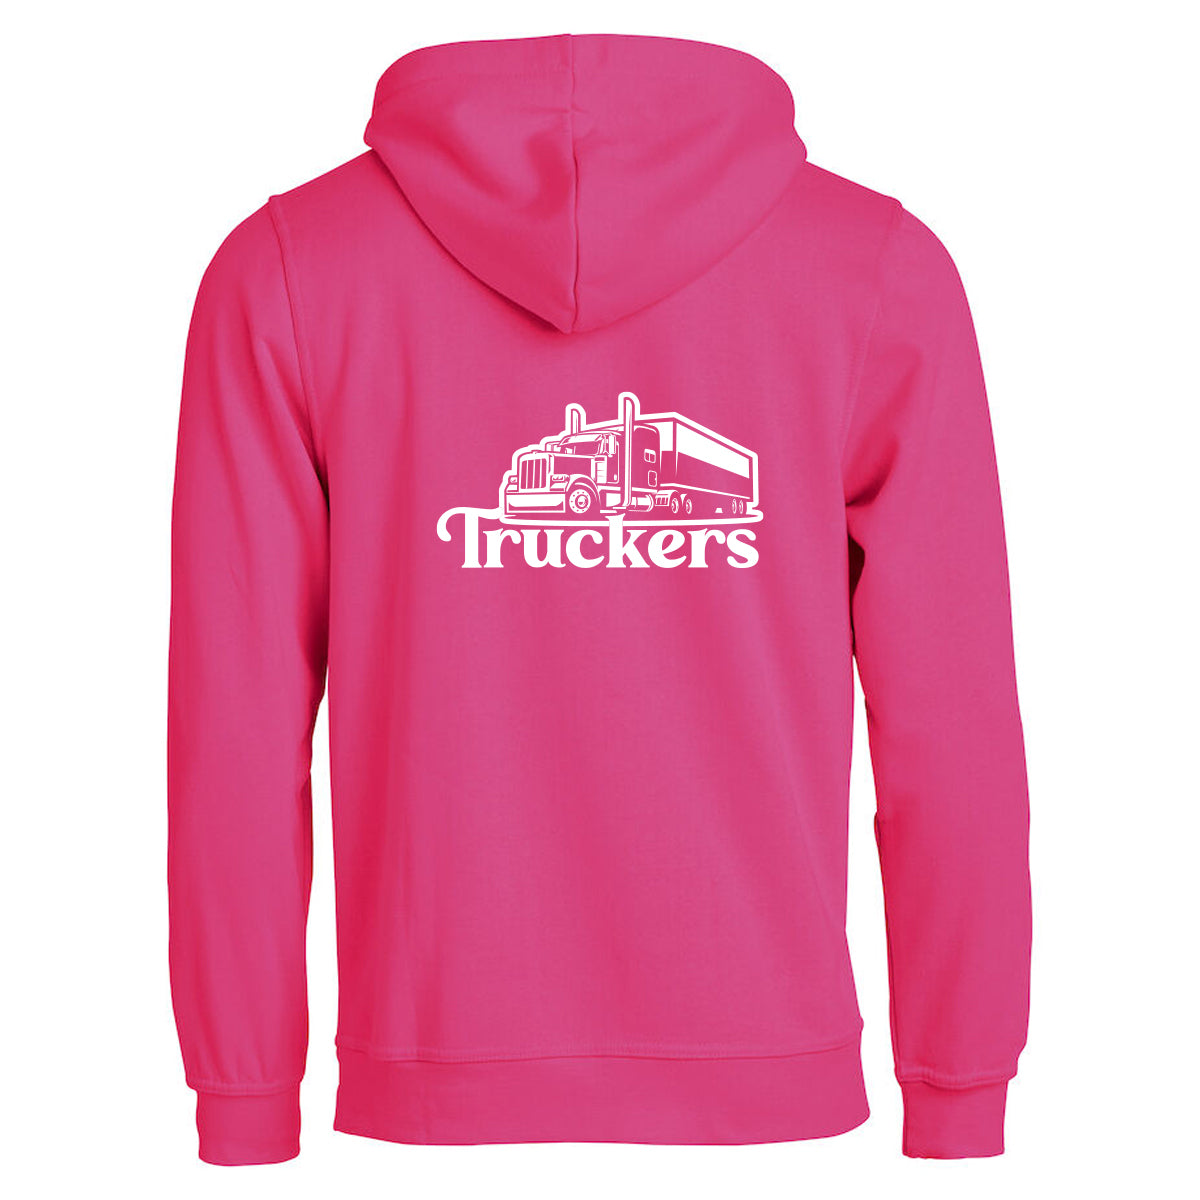 Truckers - hoodie